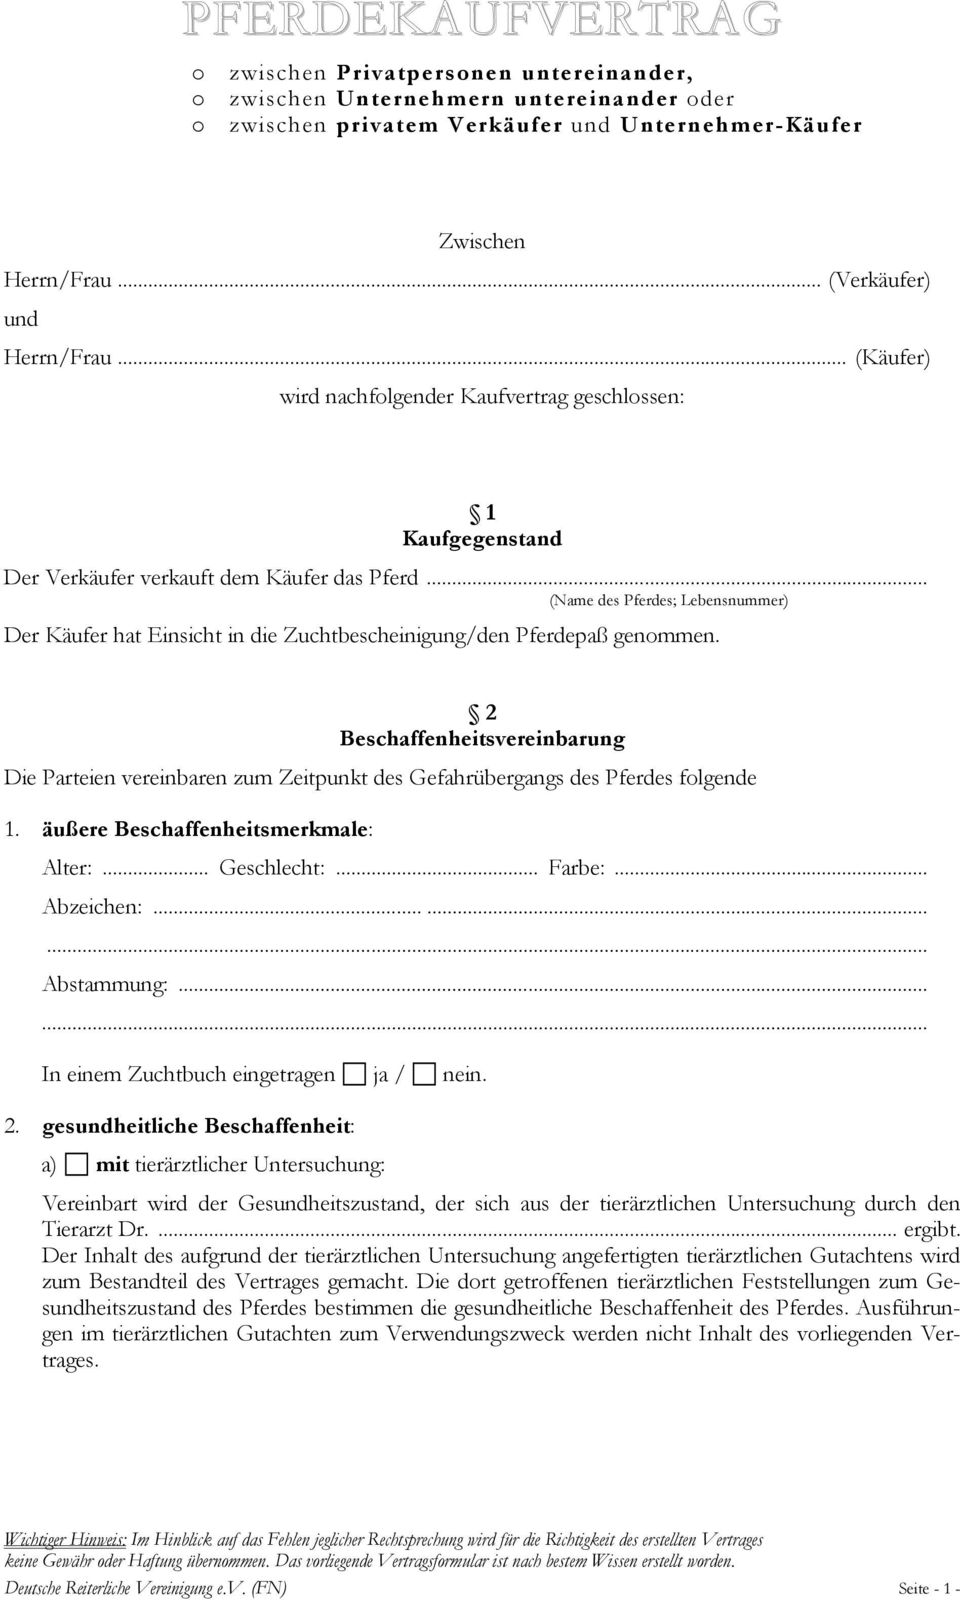 Pferdekaufvertrag Zwischen Herrn Frau Verkaufer Und Herrn Frau Kaufer Wird Nachfolgender Kaufvertrag Geschlossen Pdf Kostenfreier Download